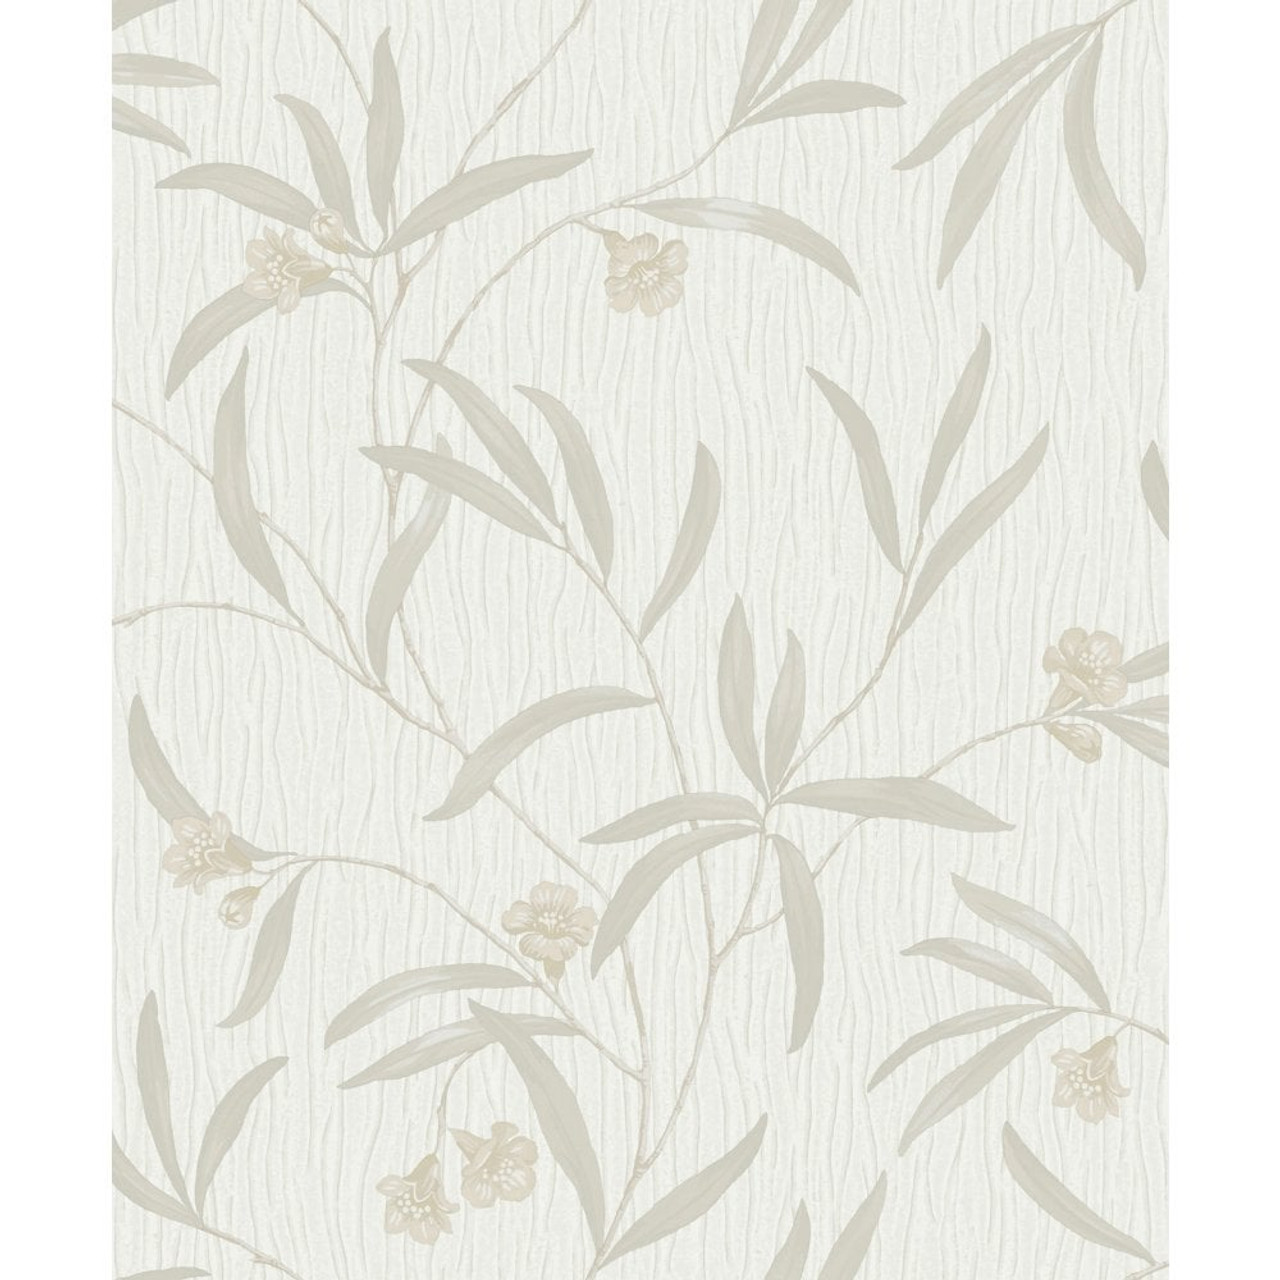 41330 Tiffany Floral White / Cream Wallpaper by Belgravia